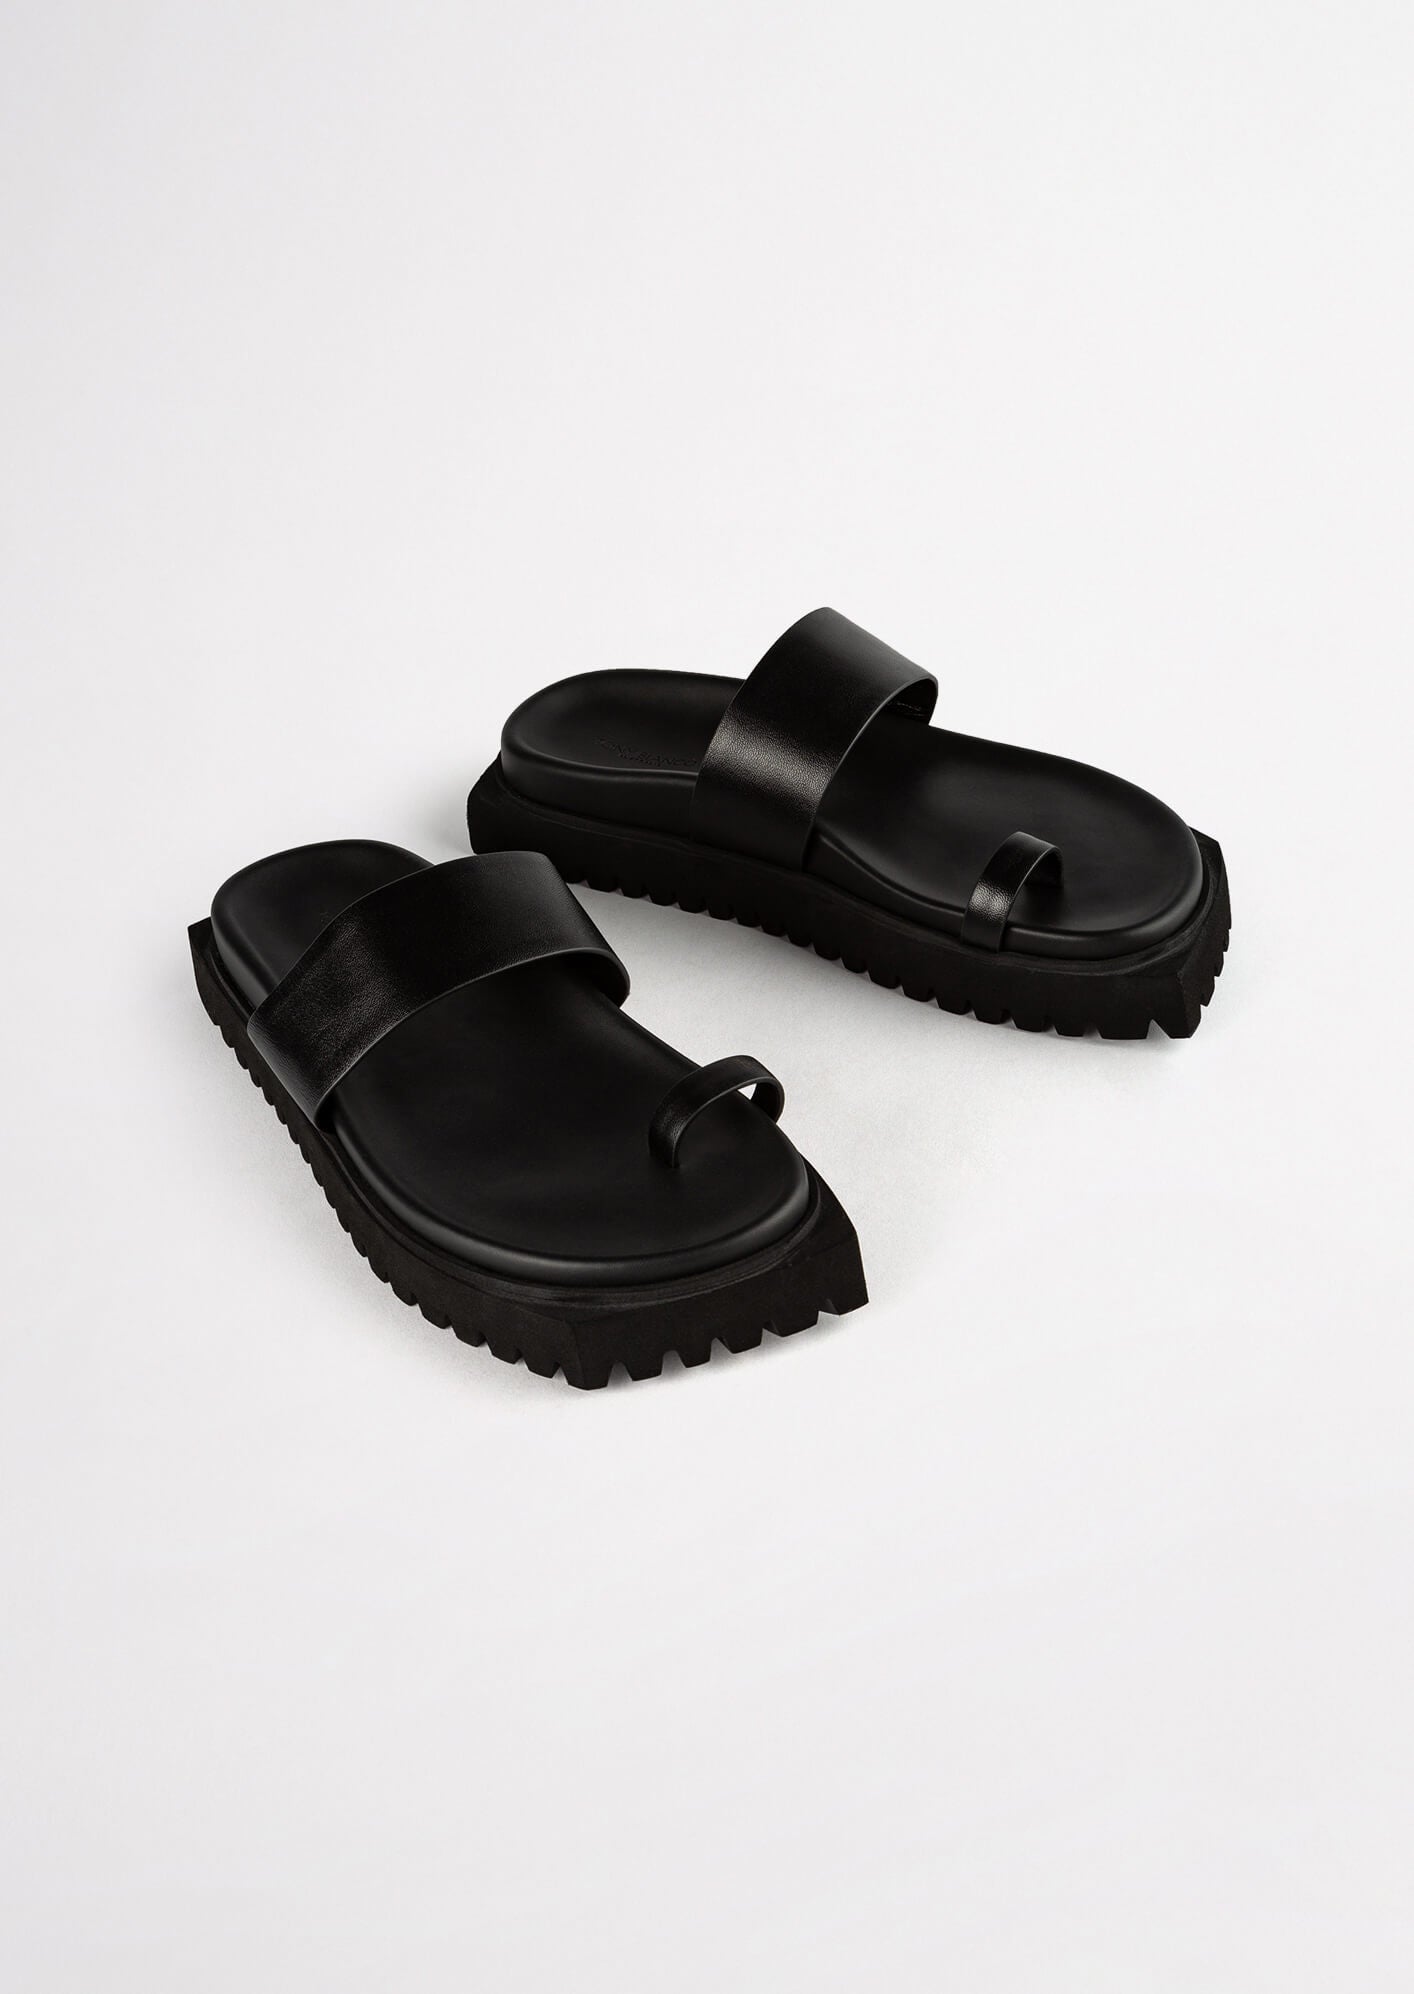 Bølle folder En skønne dag Tonka Black Nappa 3cm Sandals | Sandals | Tony Bianco